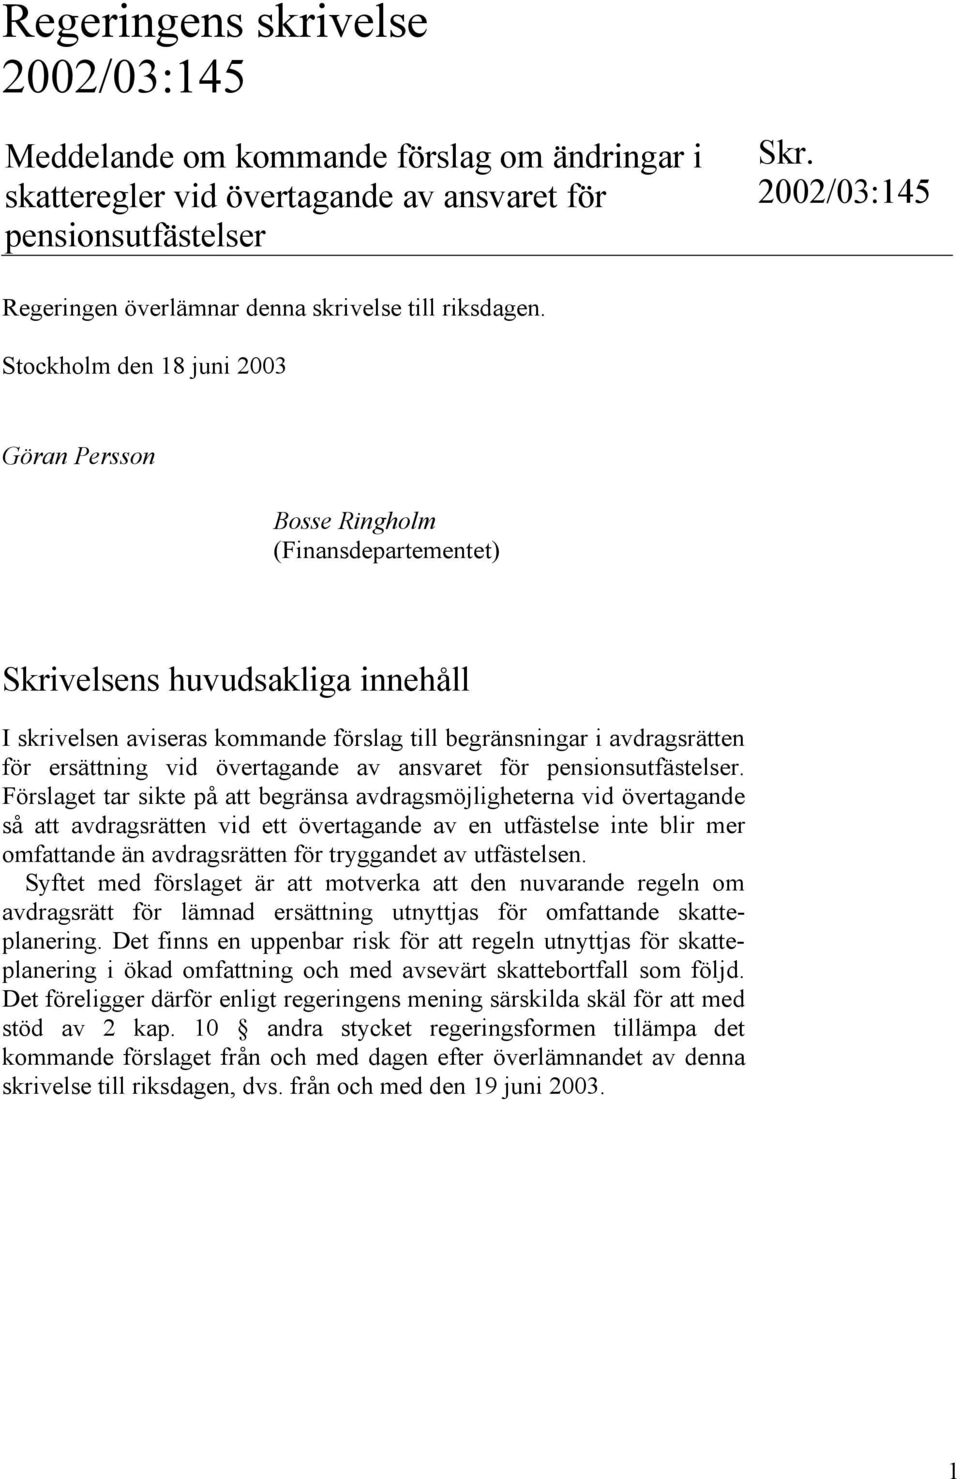 Stockholm den 18 juni 2003 Göran Persson Bosse Ringholm (Finansdepartementet) Skrivelsens huvudsakliga innehåll I skrivelsen aviseras kommande förslag till begränsningar i avdragsrätten för